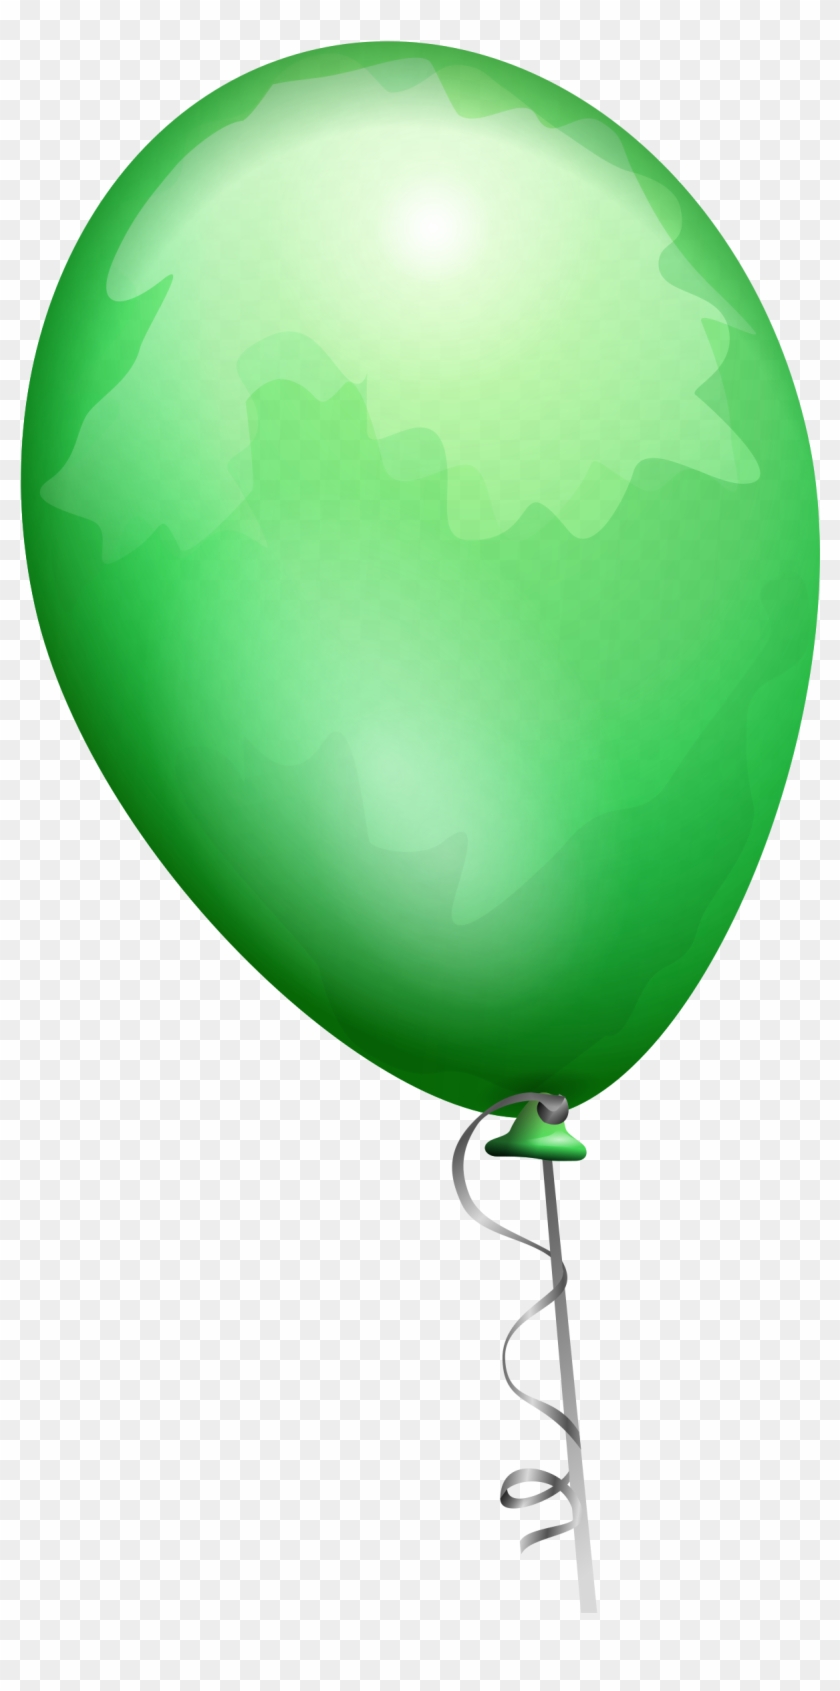 Green Balloon Clipart - Balloon Clip Art #188757